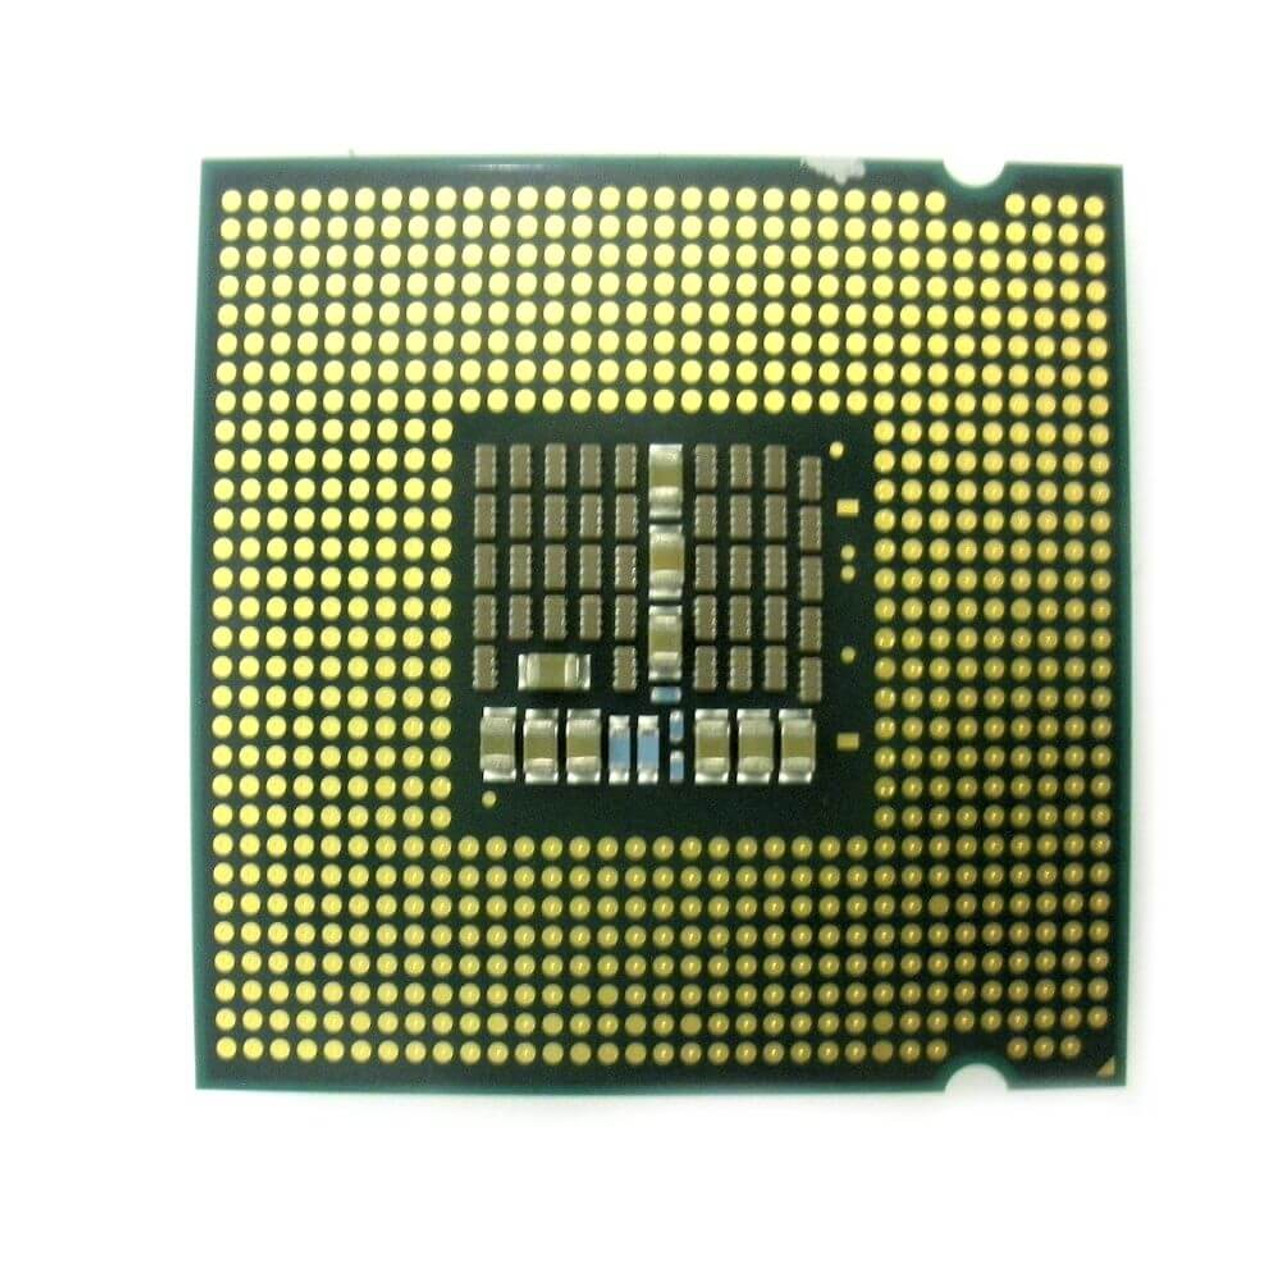 Intel SLACS Processor CPU Xeon X3230 Quad Core